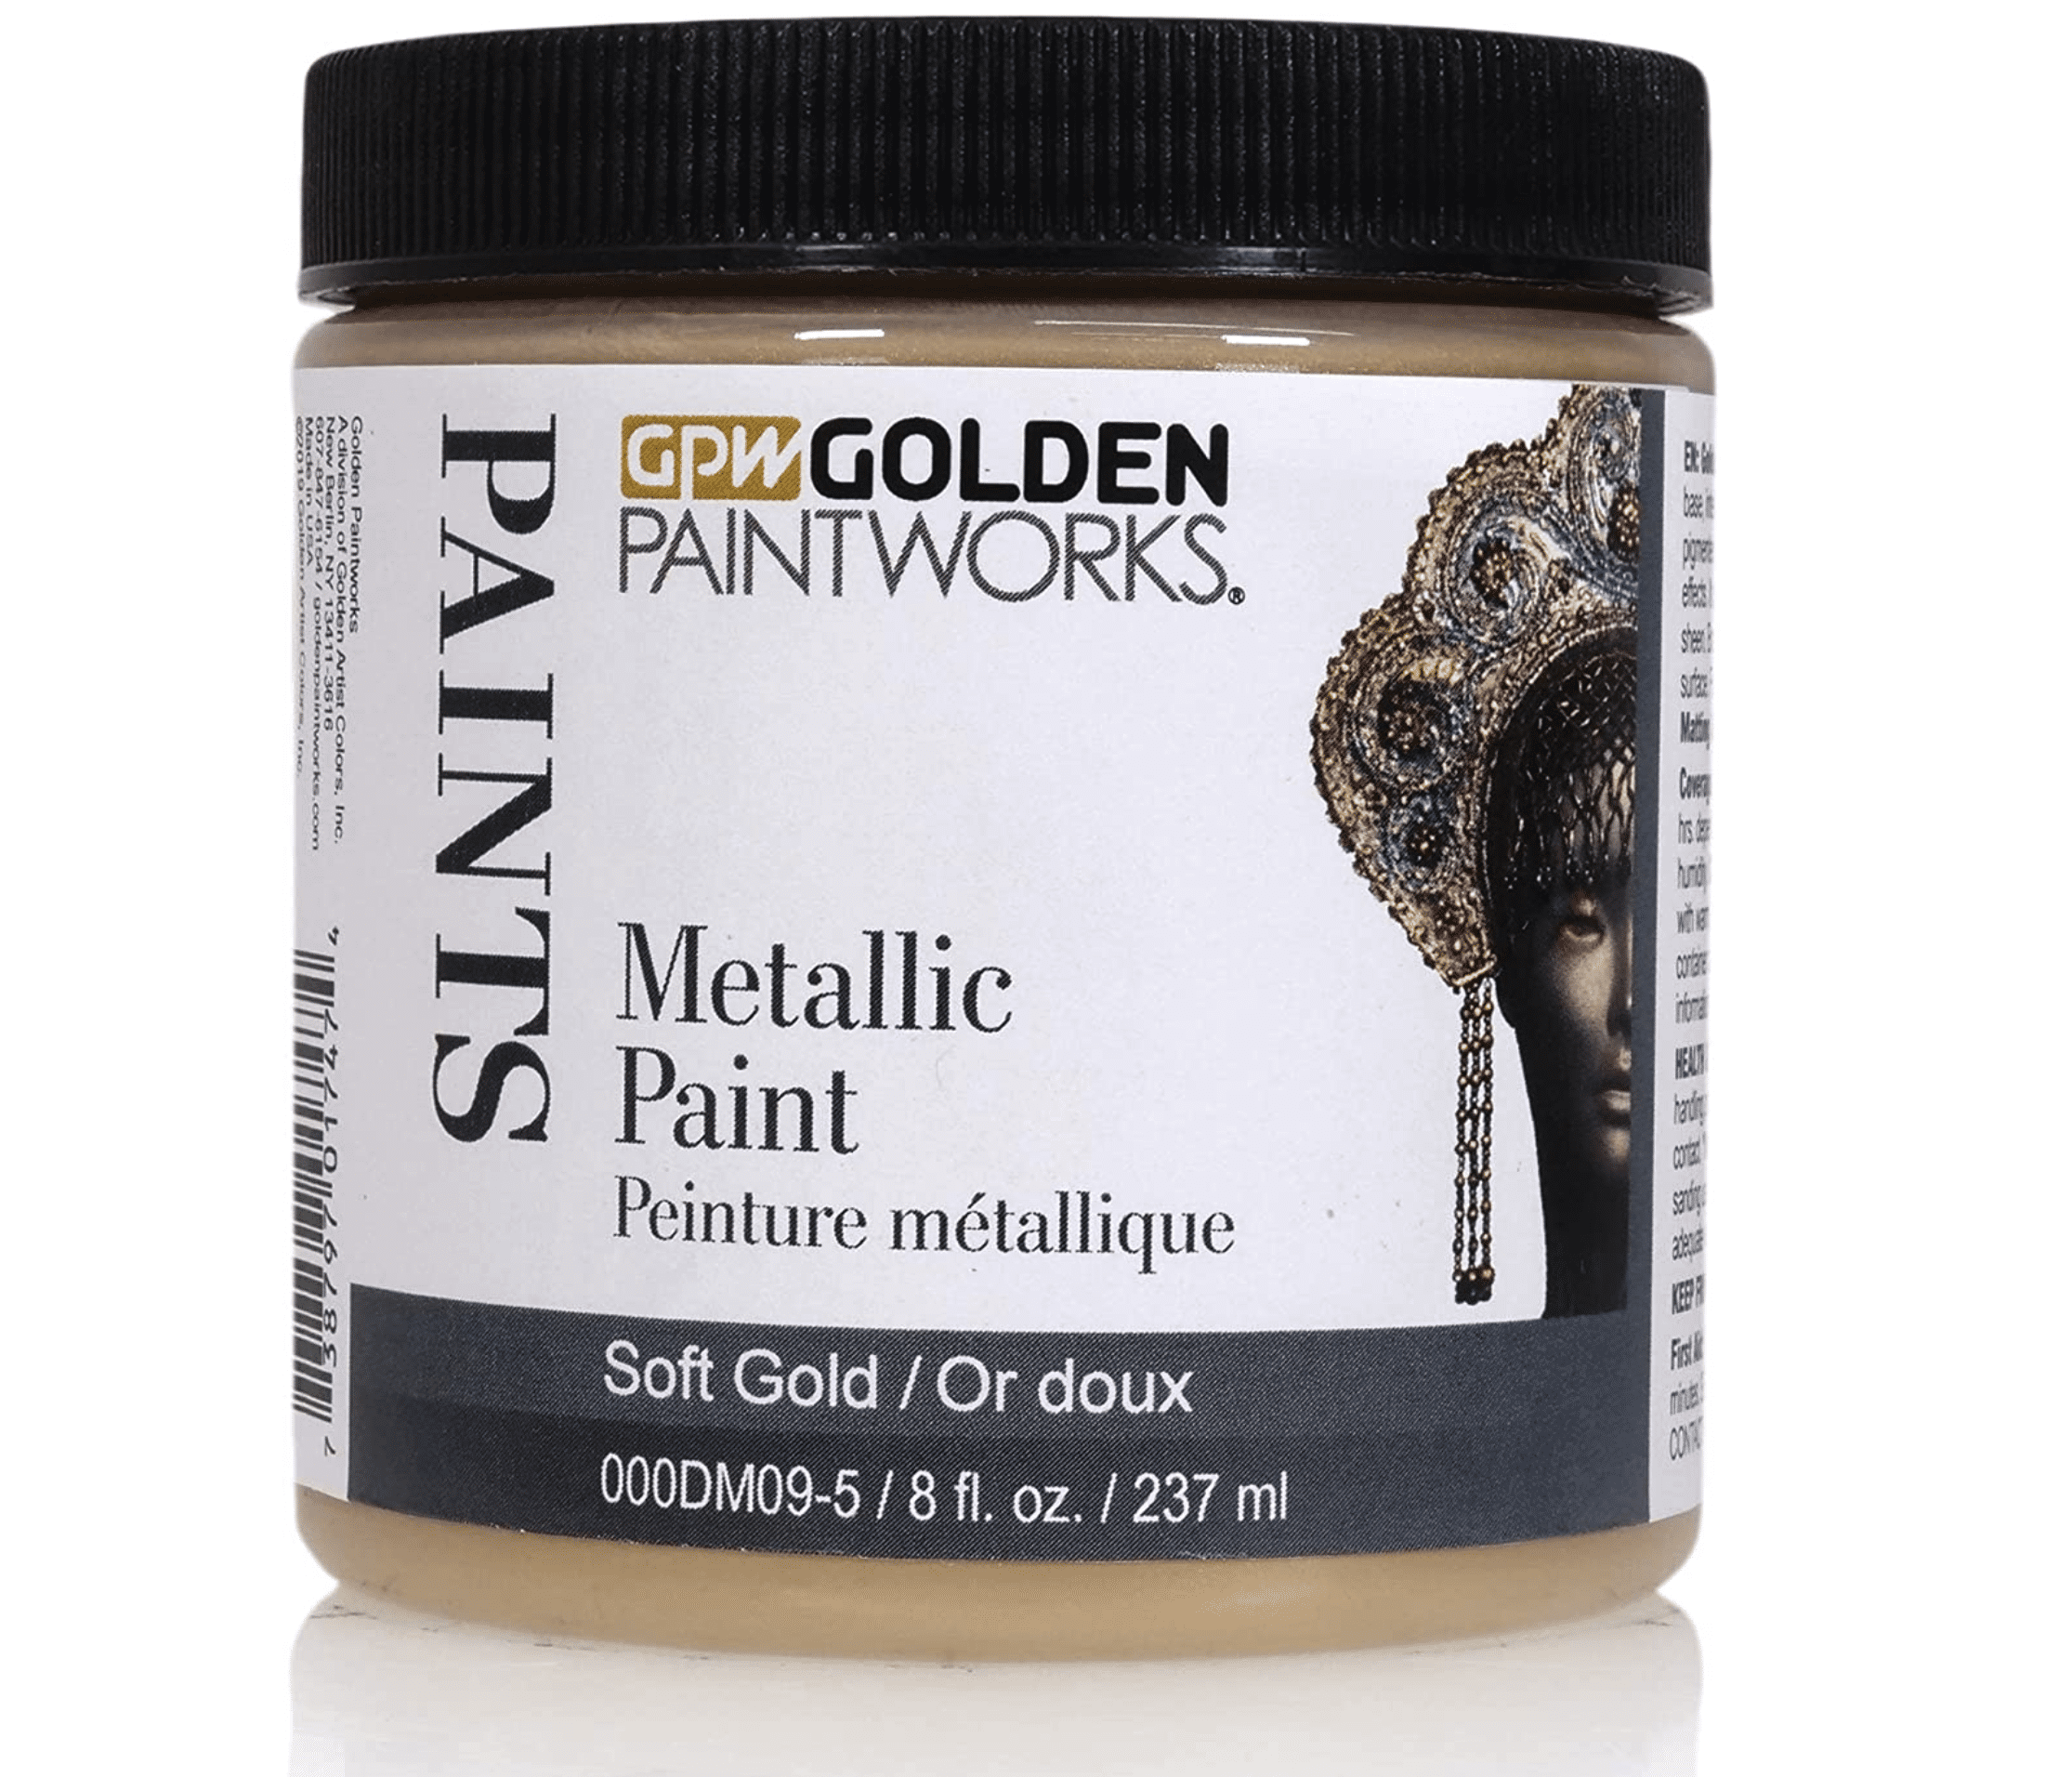 Golden Paintworks Metallic Paint, 8 ounce jar, Soft Gold (DM09-5)